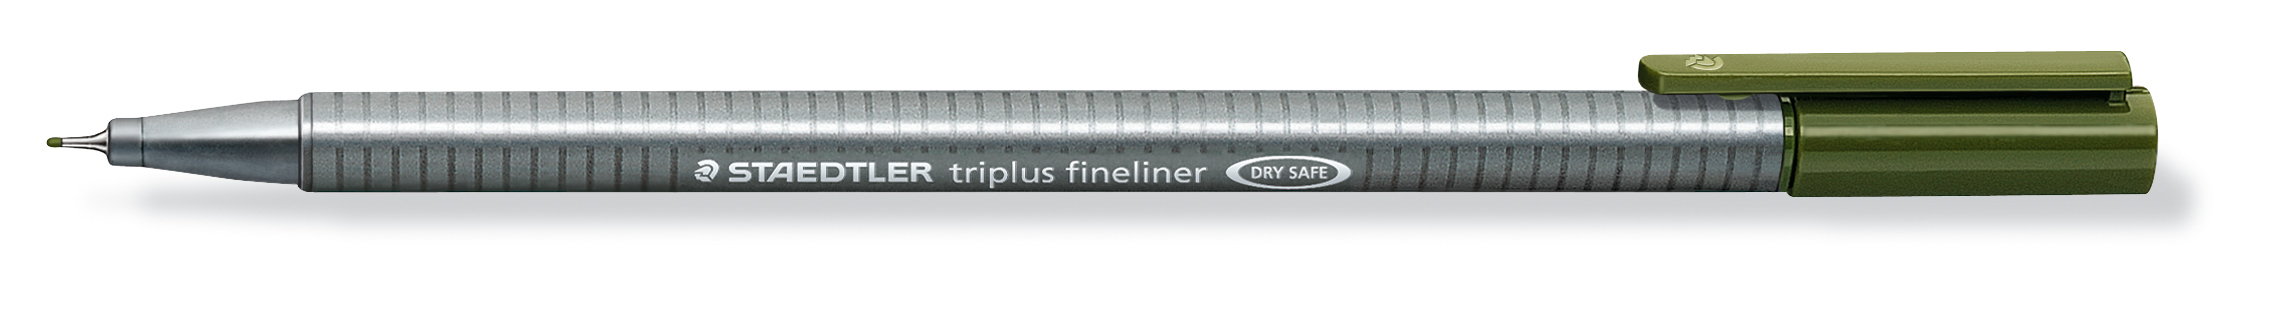 STAEDTLER Triplus Fineliner 0,3mm 334-57 olivgrün